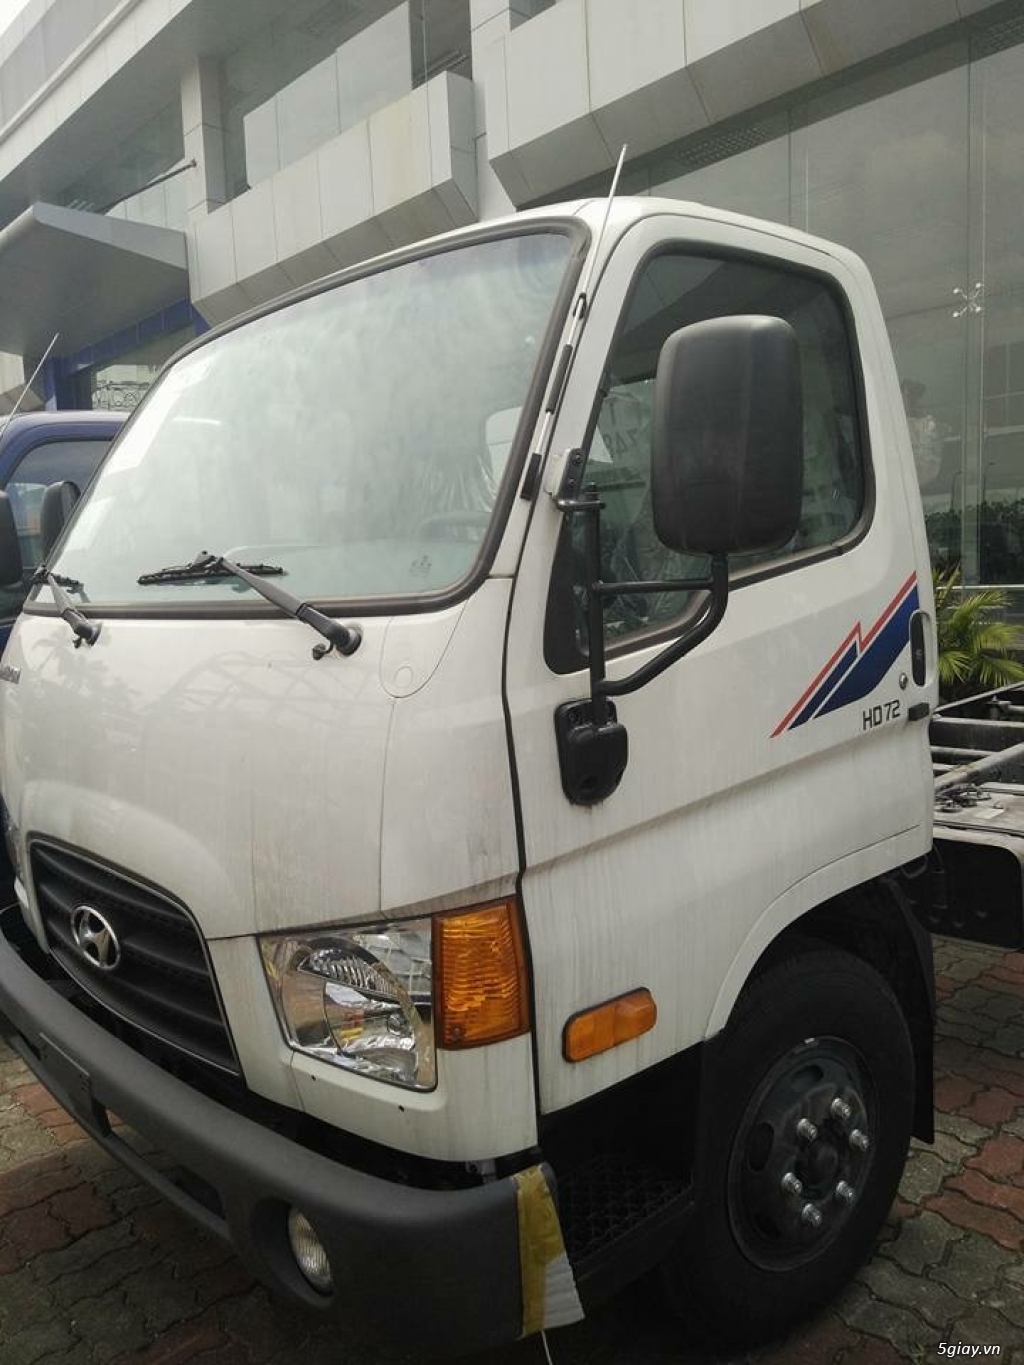 Bán xe tải hyundai hd72 3.5T nhập khẩu 100% từ hyundai Hàn quốc - 2